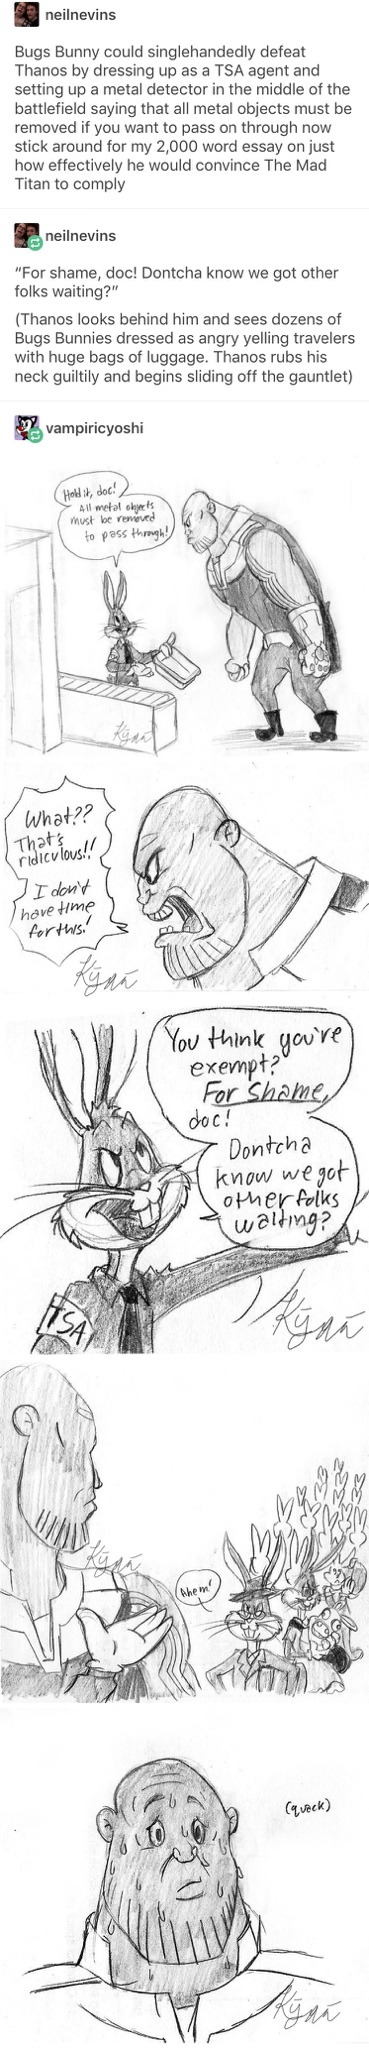 Bugs Bunny vs Thanos